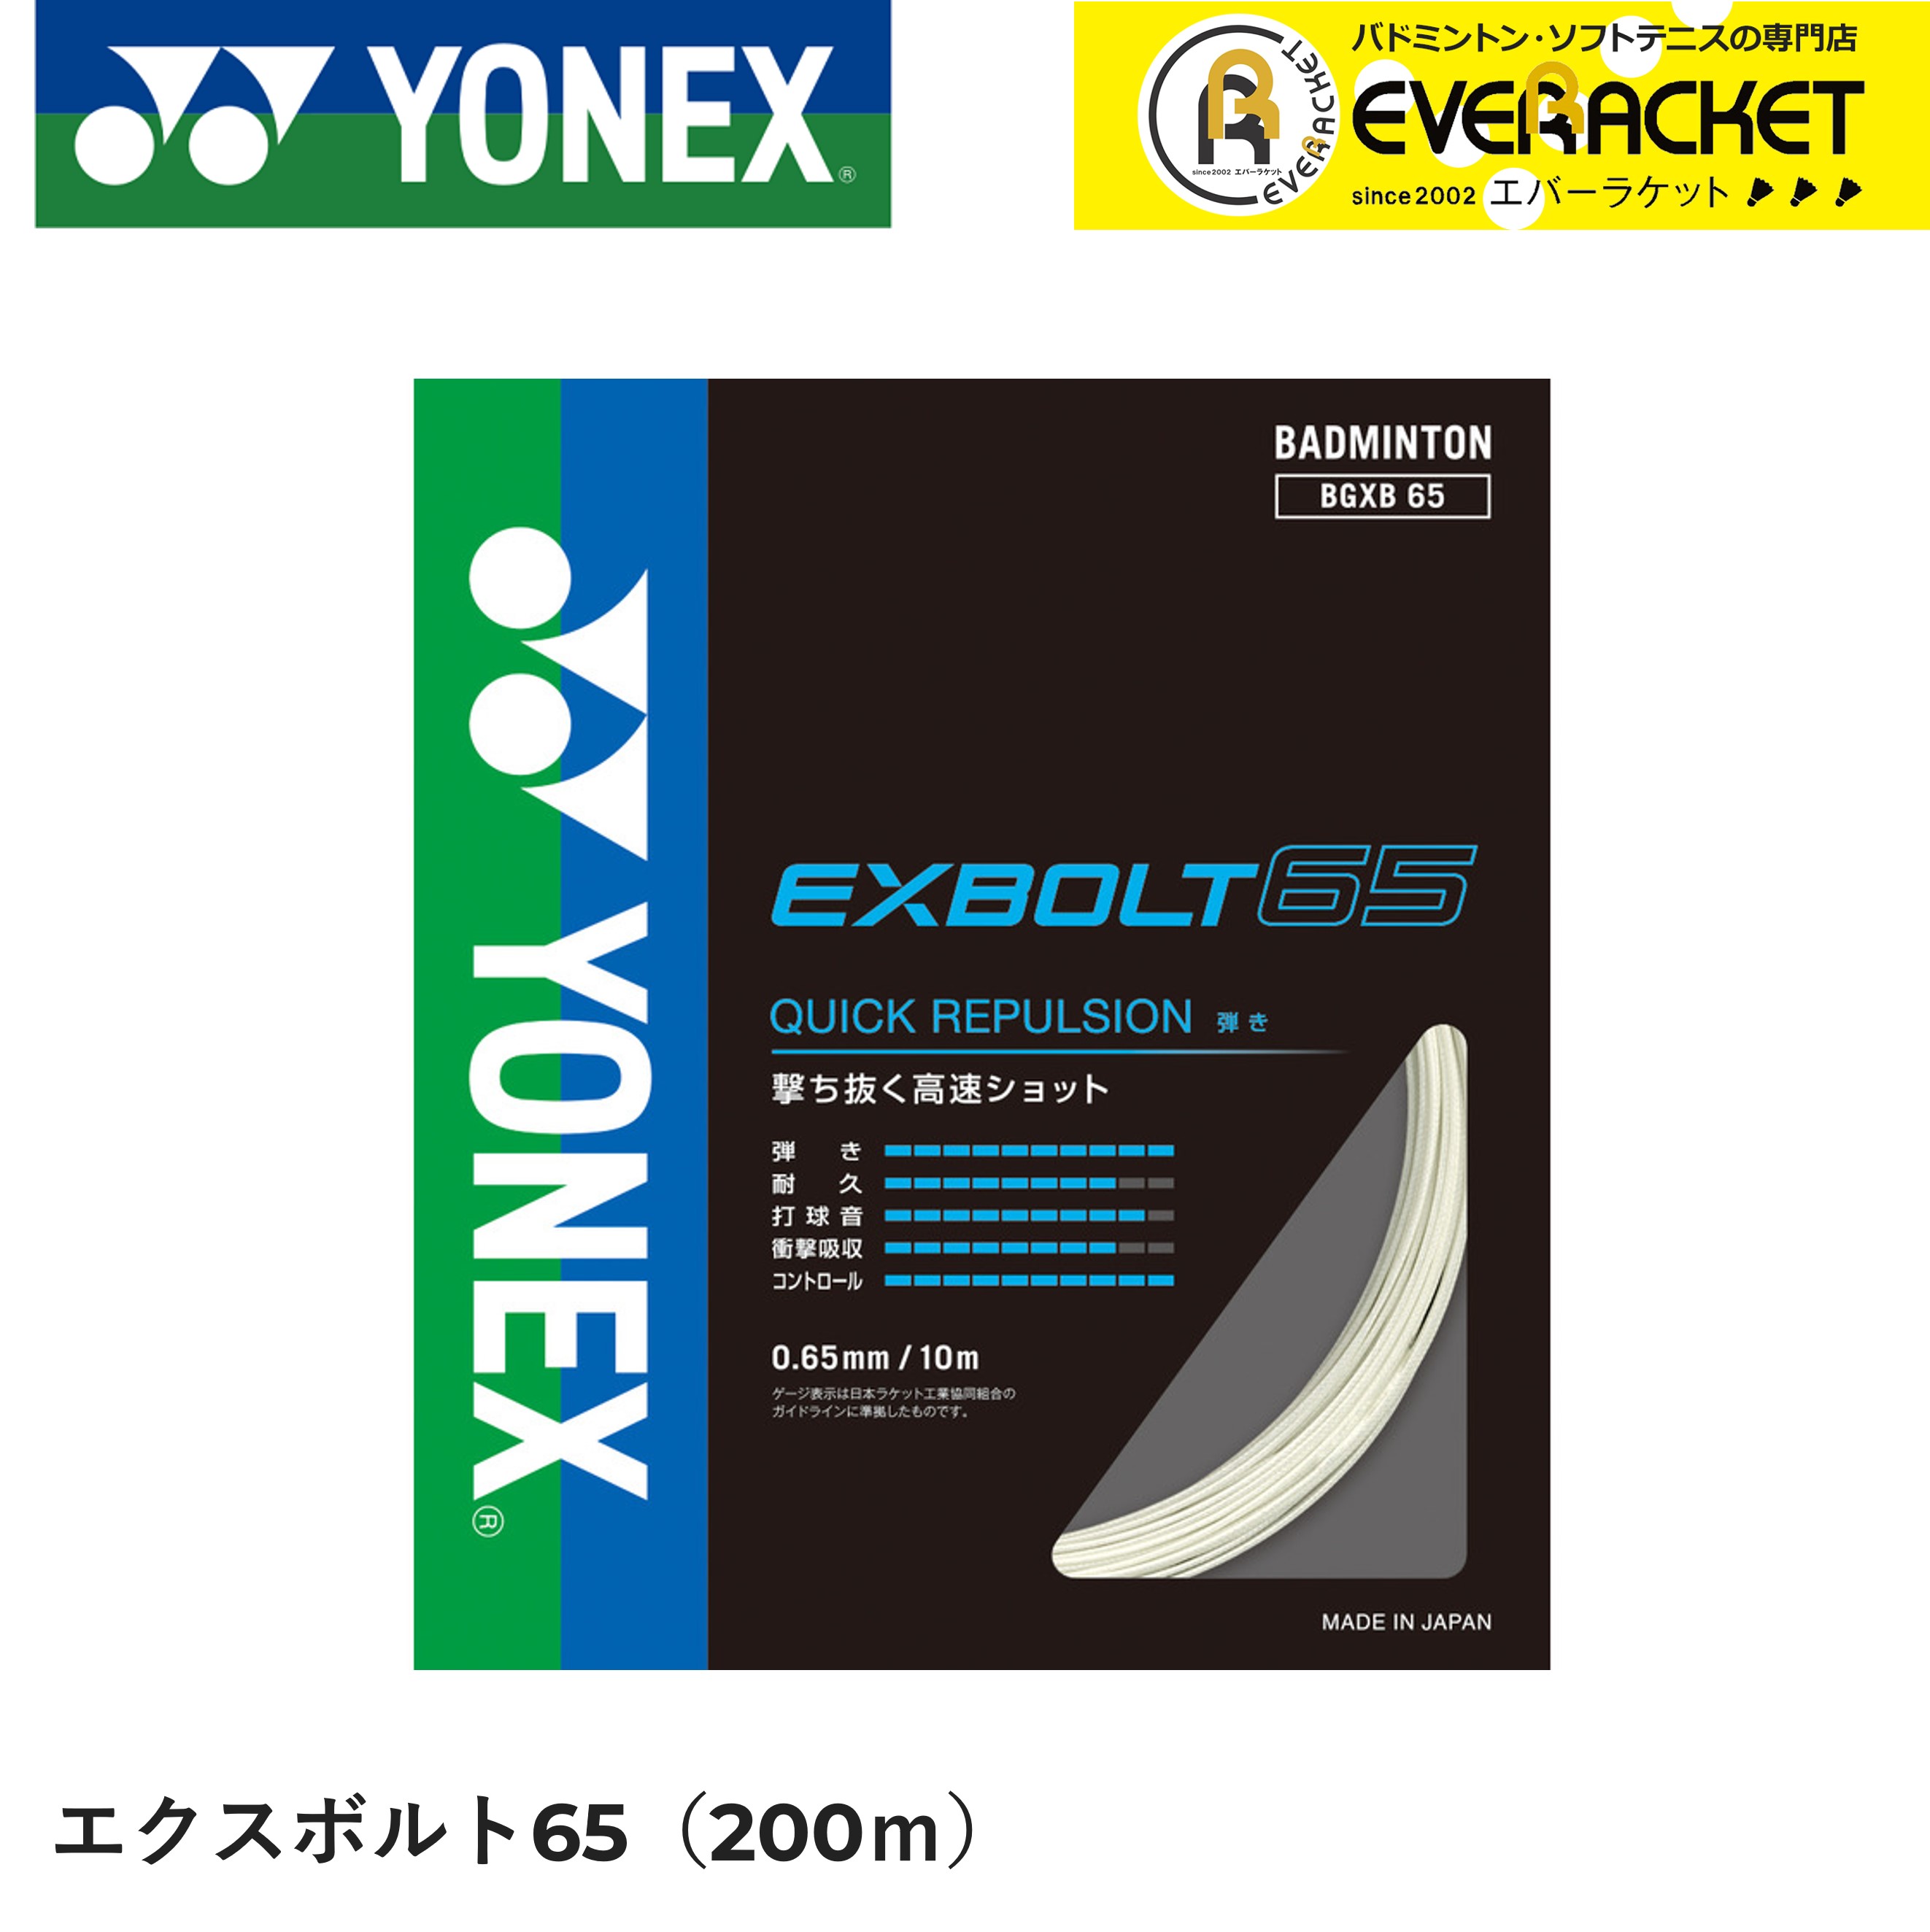 YONEX バドミントン BG80 POWER 【BG80P】